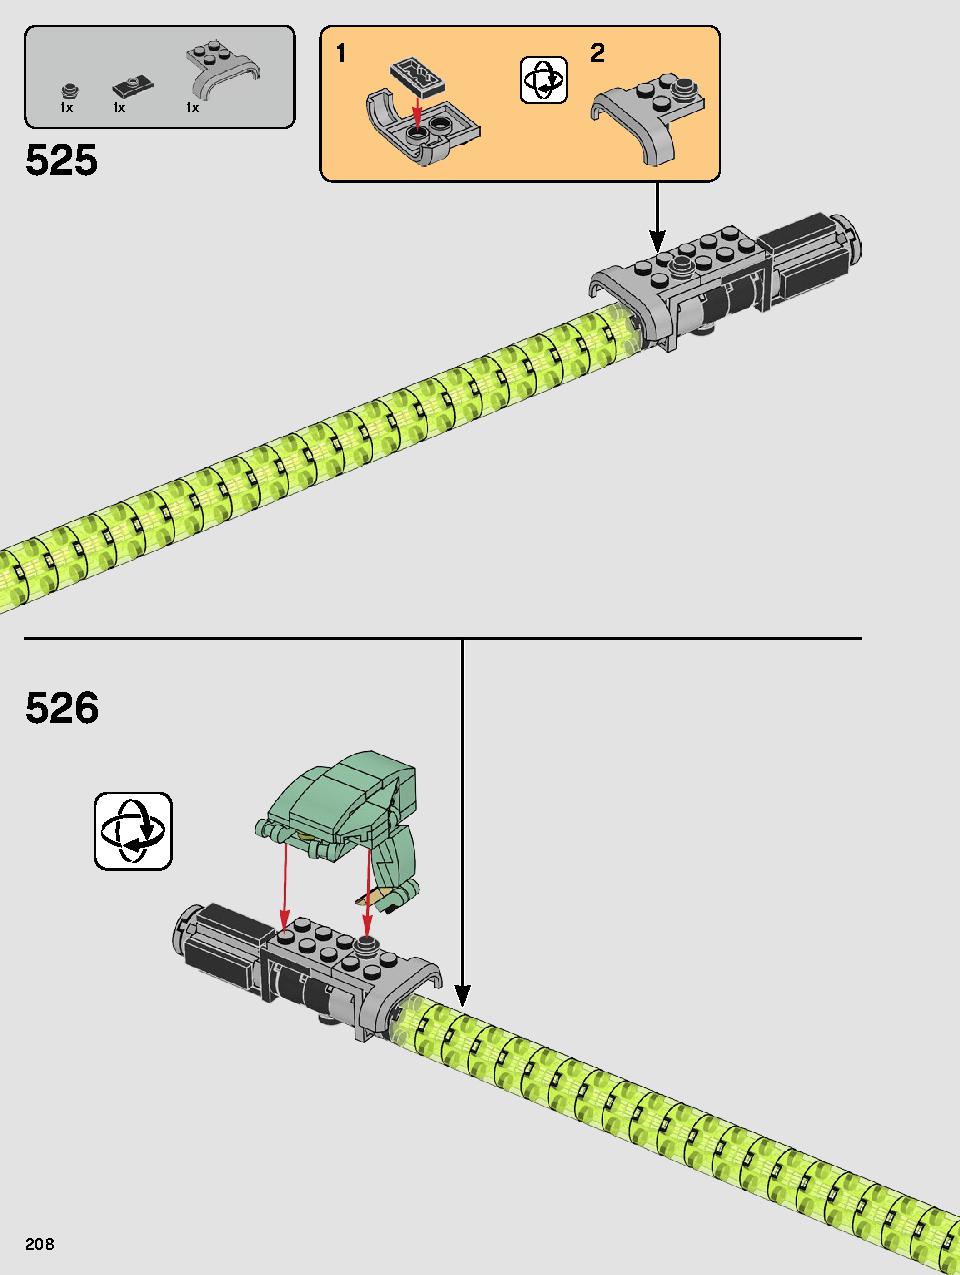 ヨーダ™ 75255 レゴの商品情報 レゴの説明書・組立方法 208 page